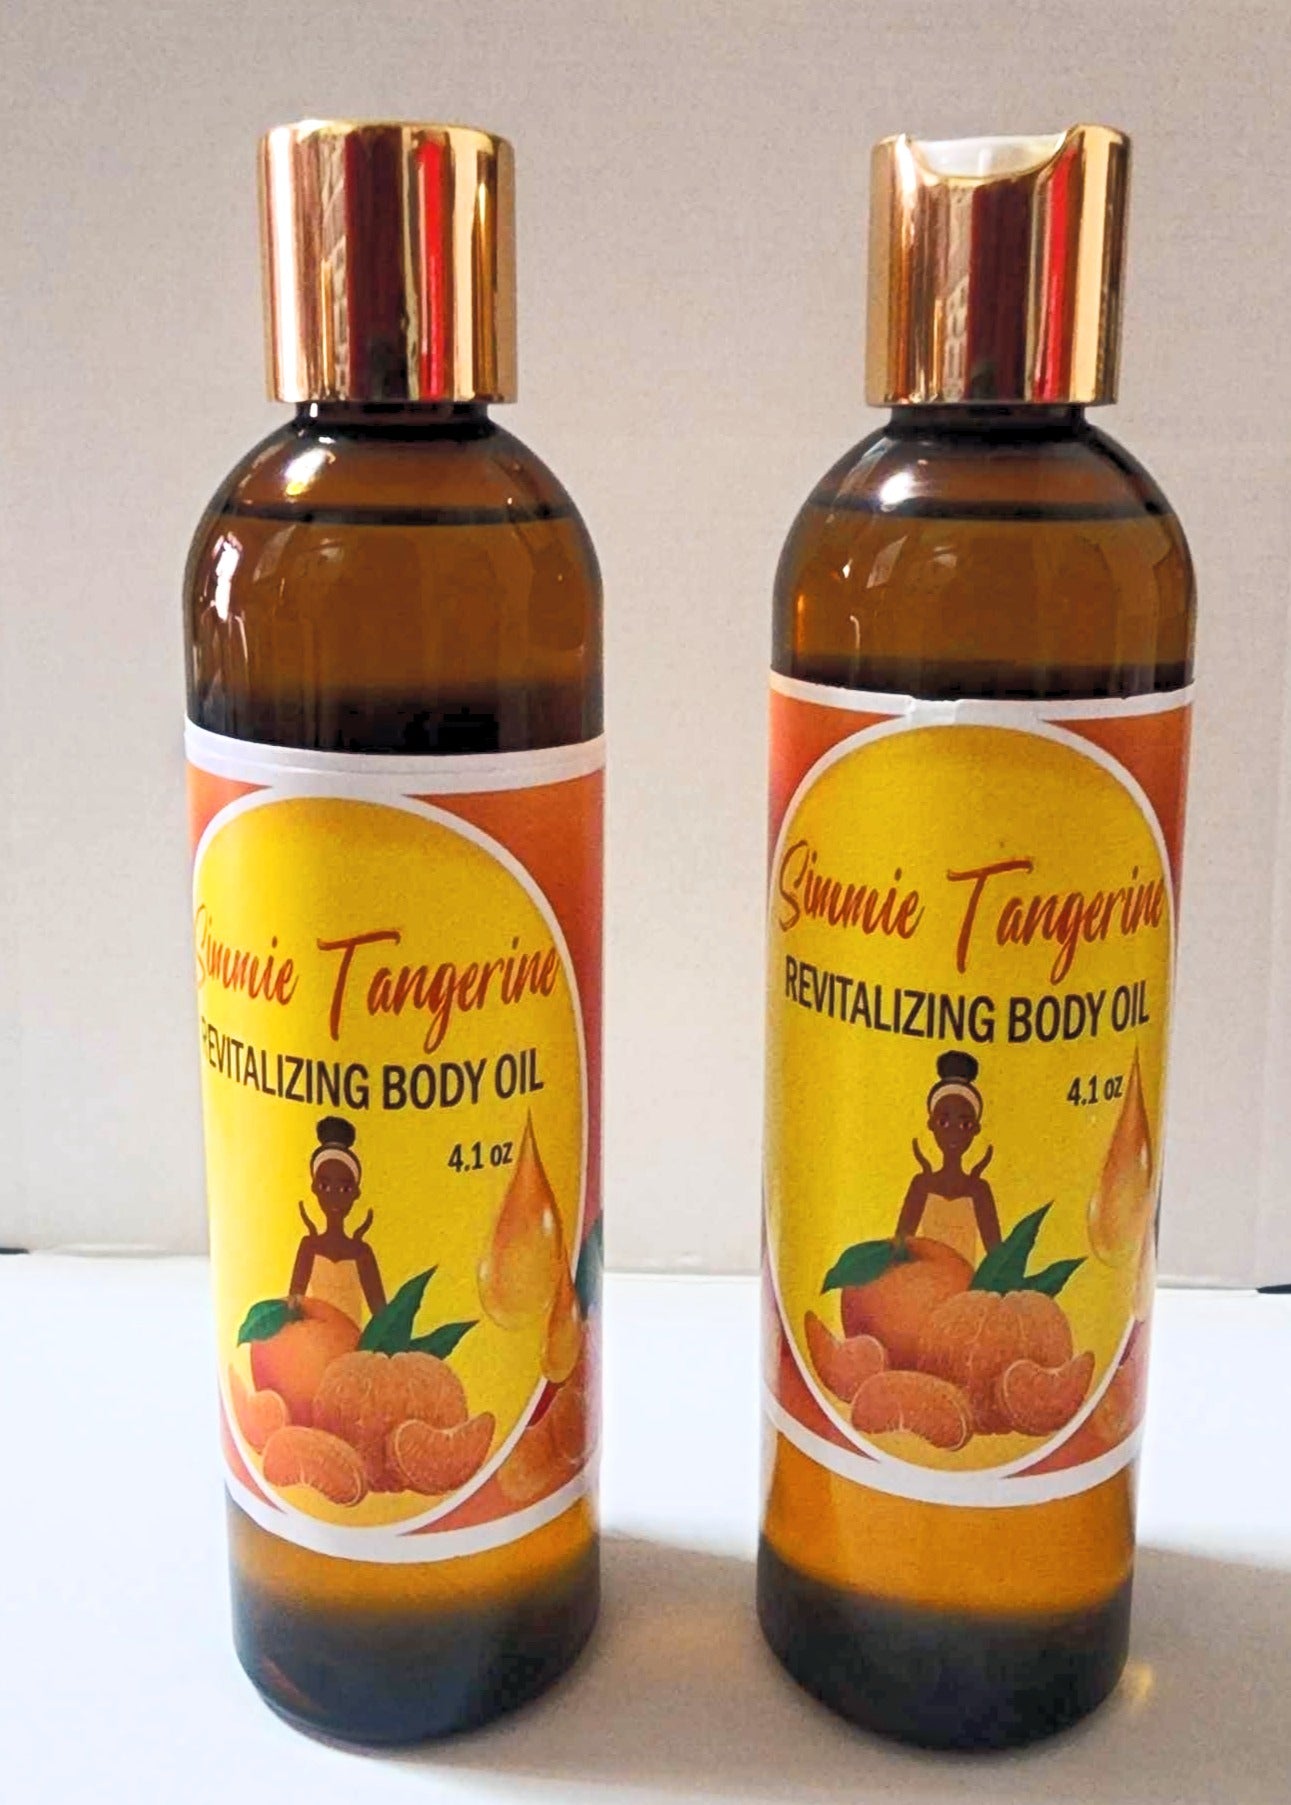 Simmie Tangerine Revitalizing Body Oil